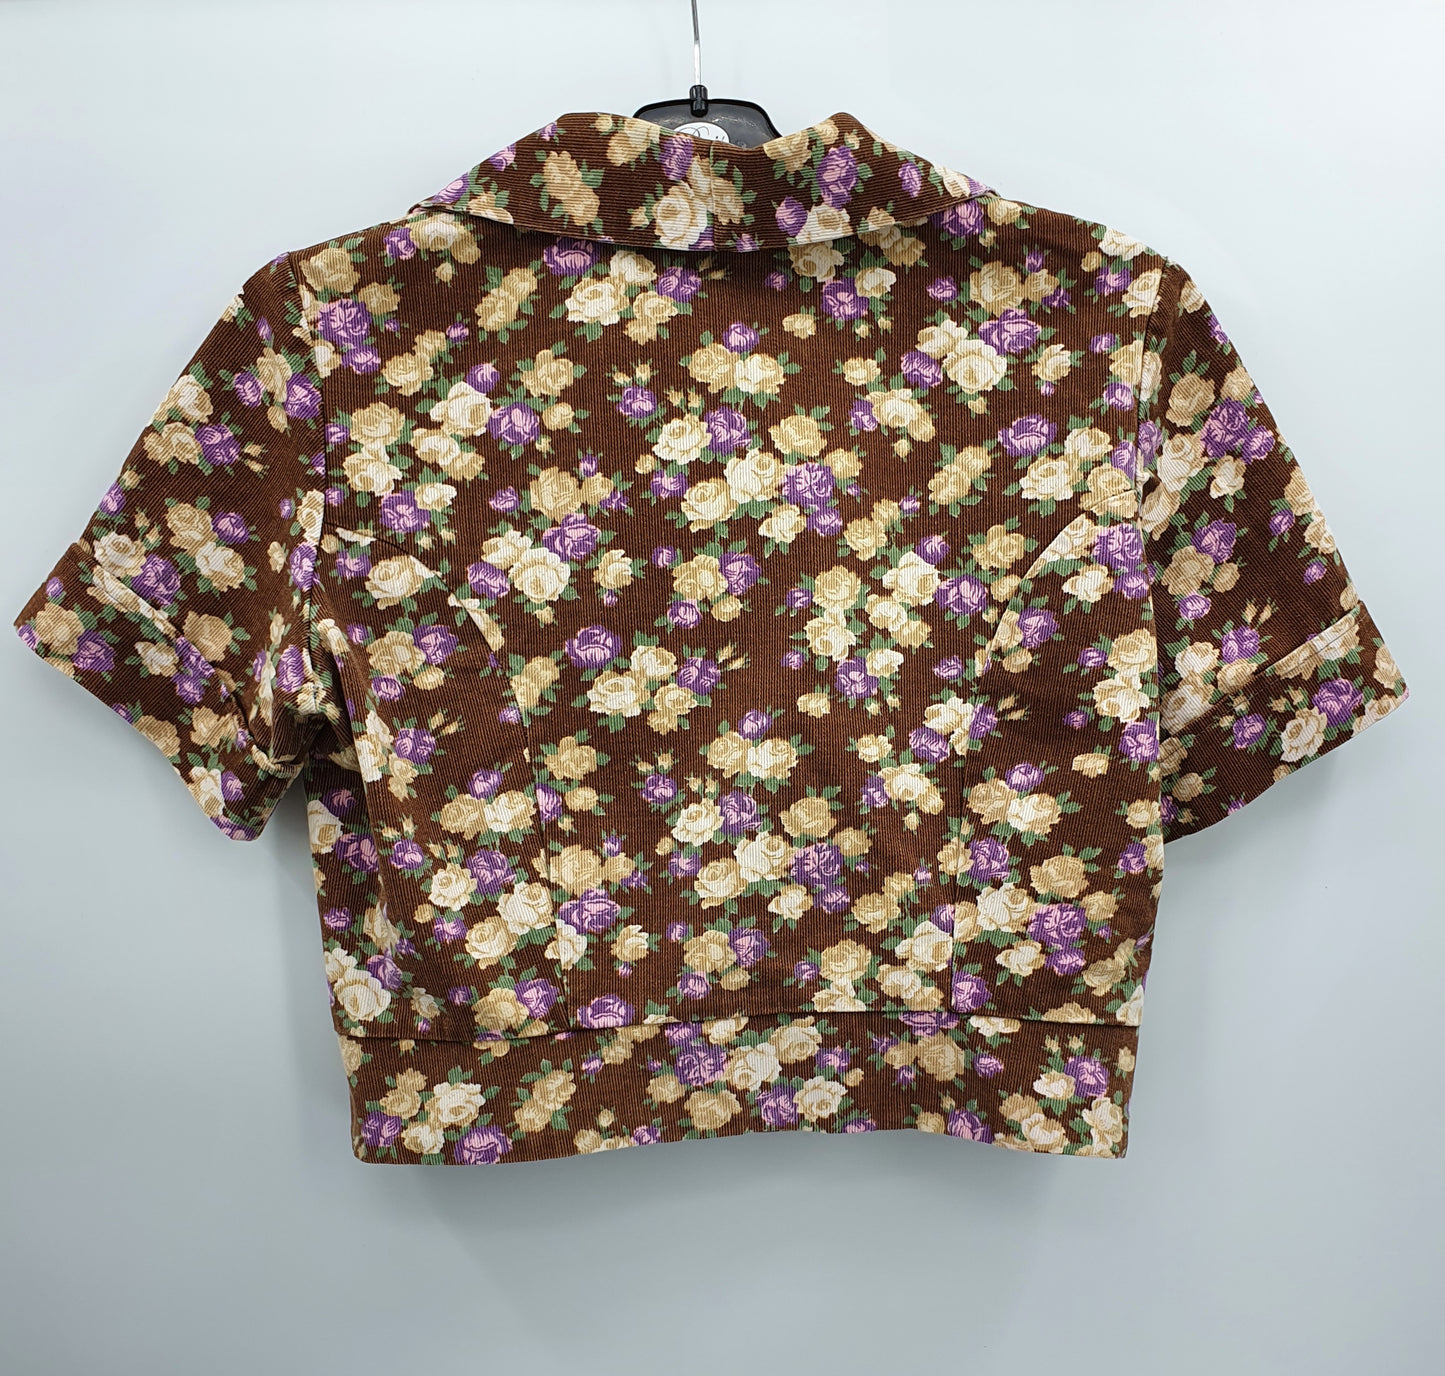 Ruskea ruusukuvioinen paita ja hame, 70-luku, koko 38-40, vyöt.ymp. 76cm